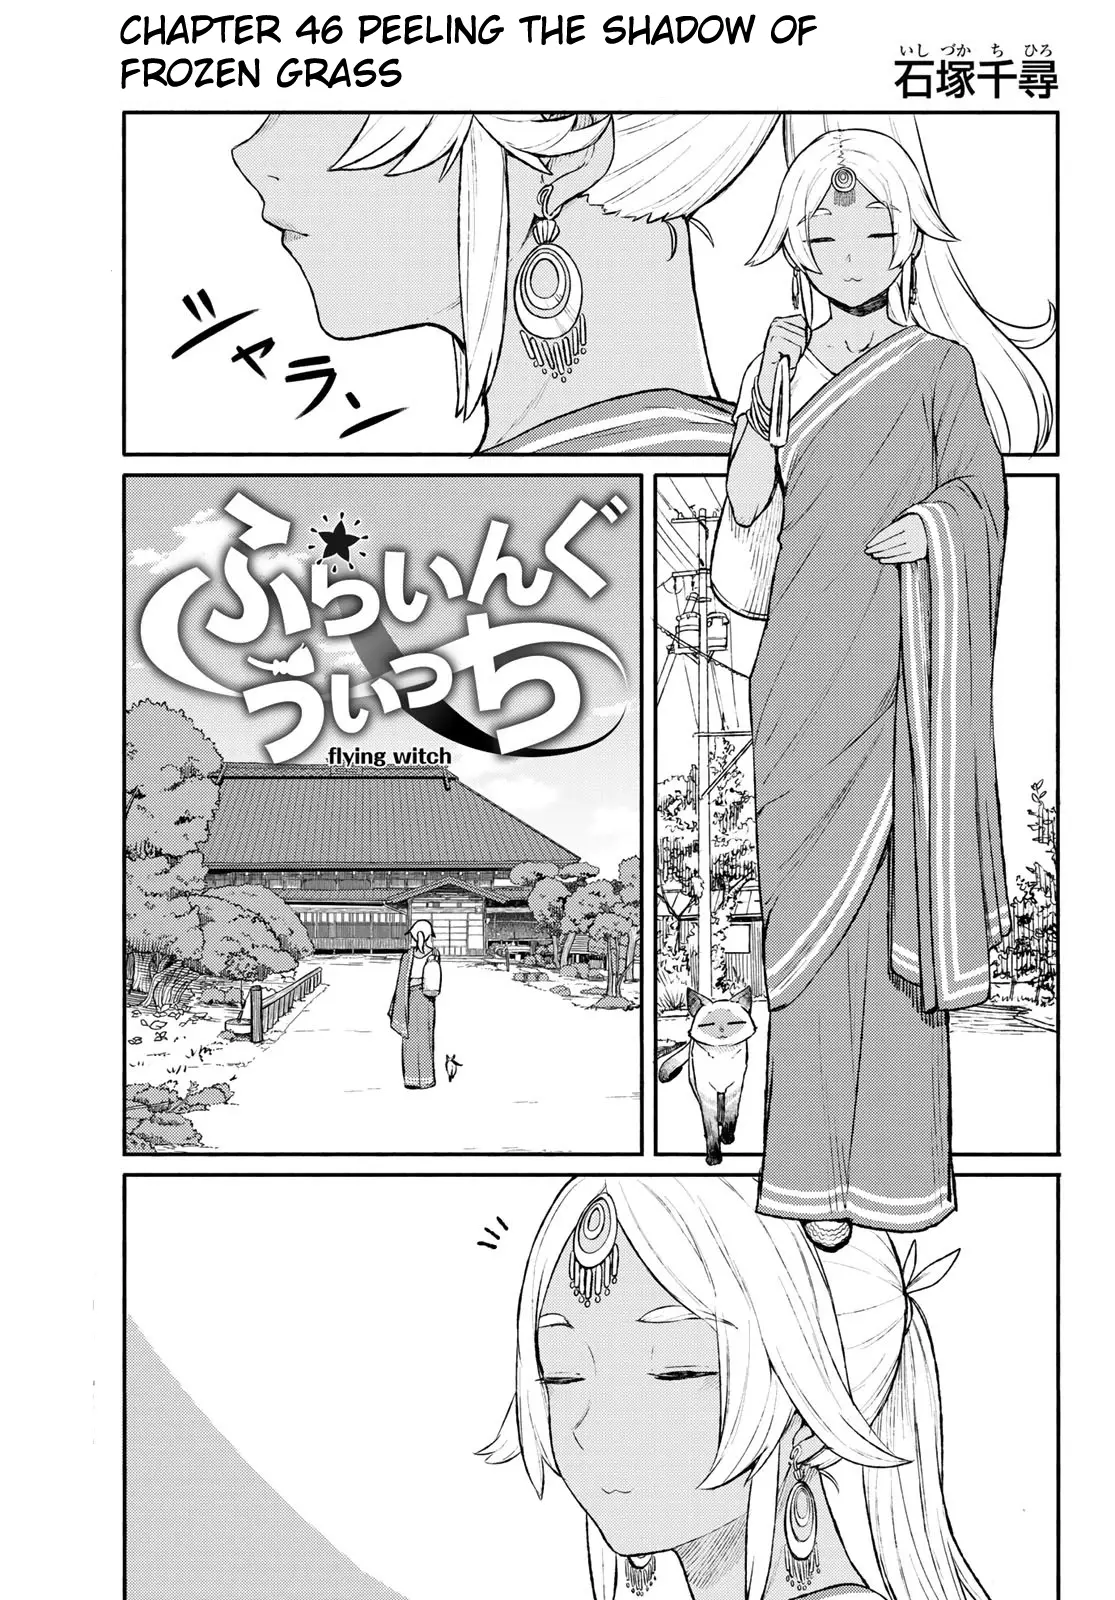 Flying Witch (ISHIZUKA Chihiro) - 46 page 1